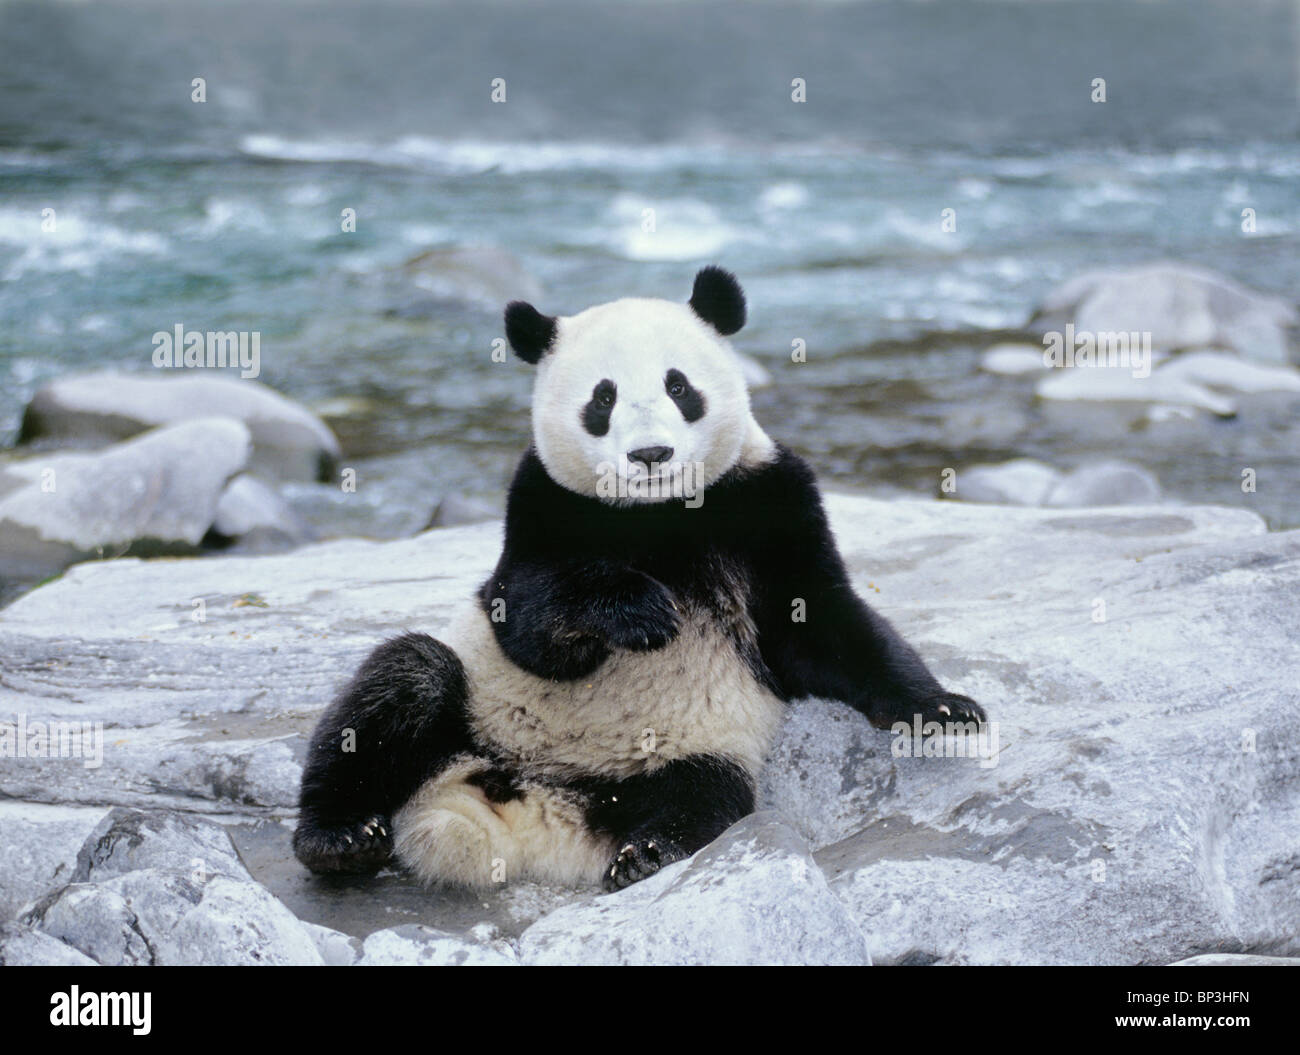 El panda gigante se encuentra junto a río, Wolong, provincia de Sichuan, China Foto de stock